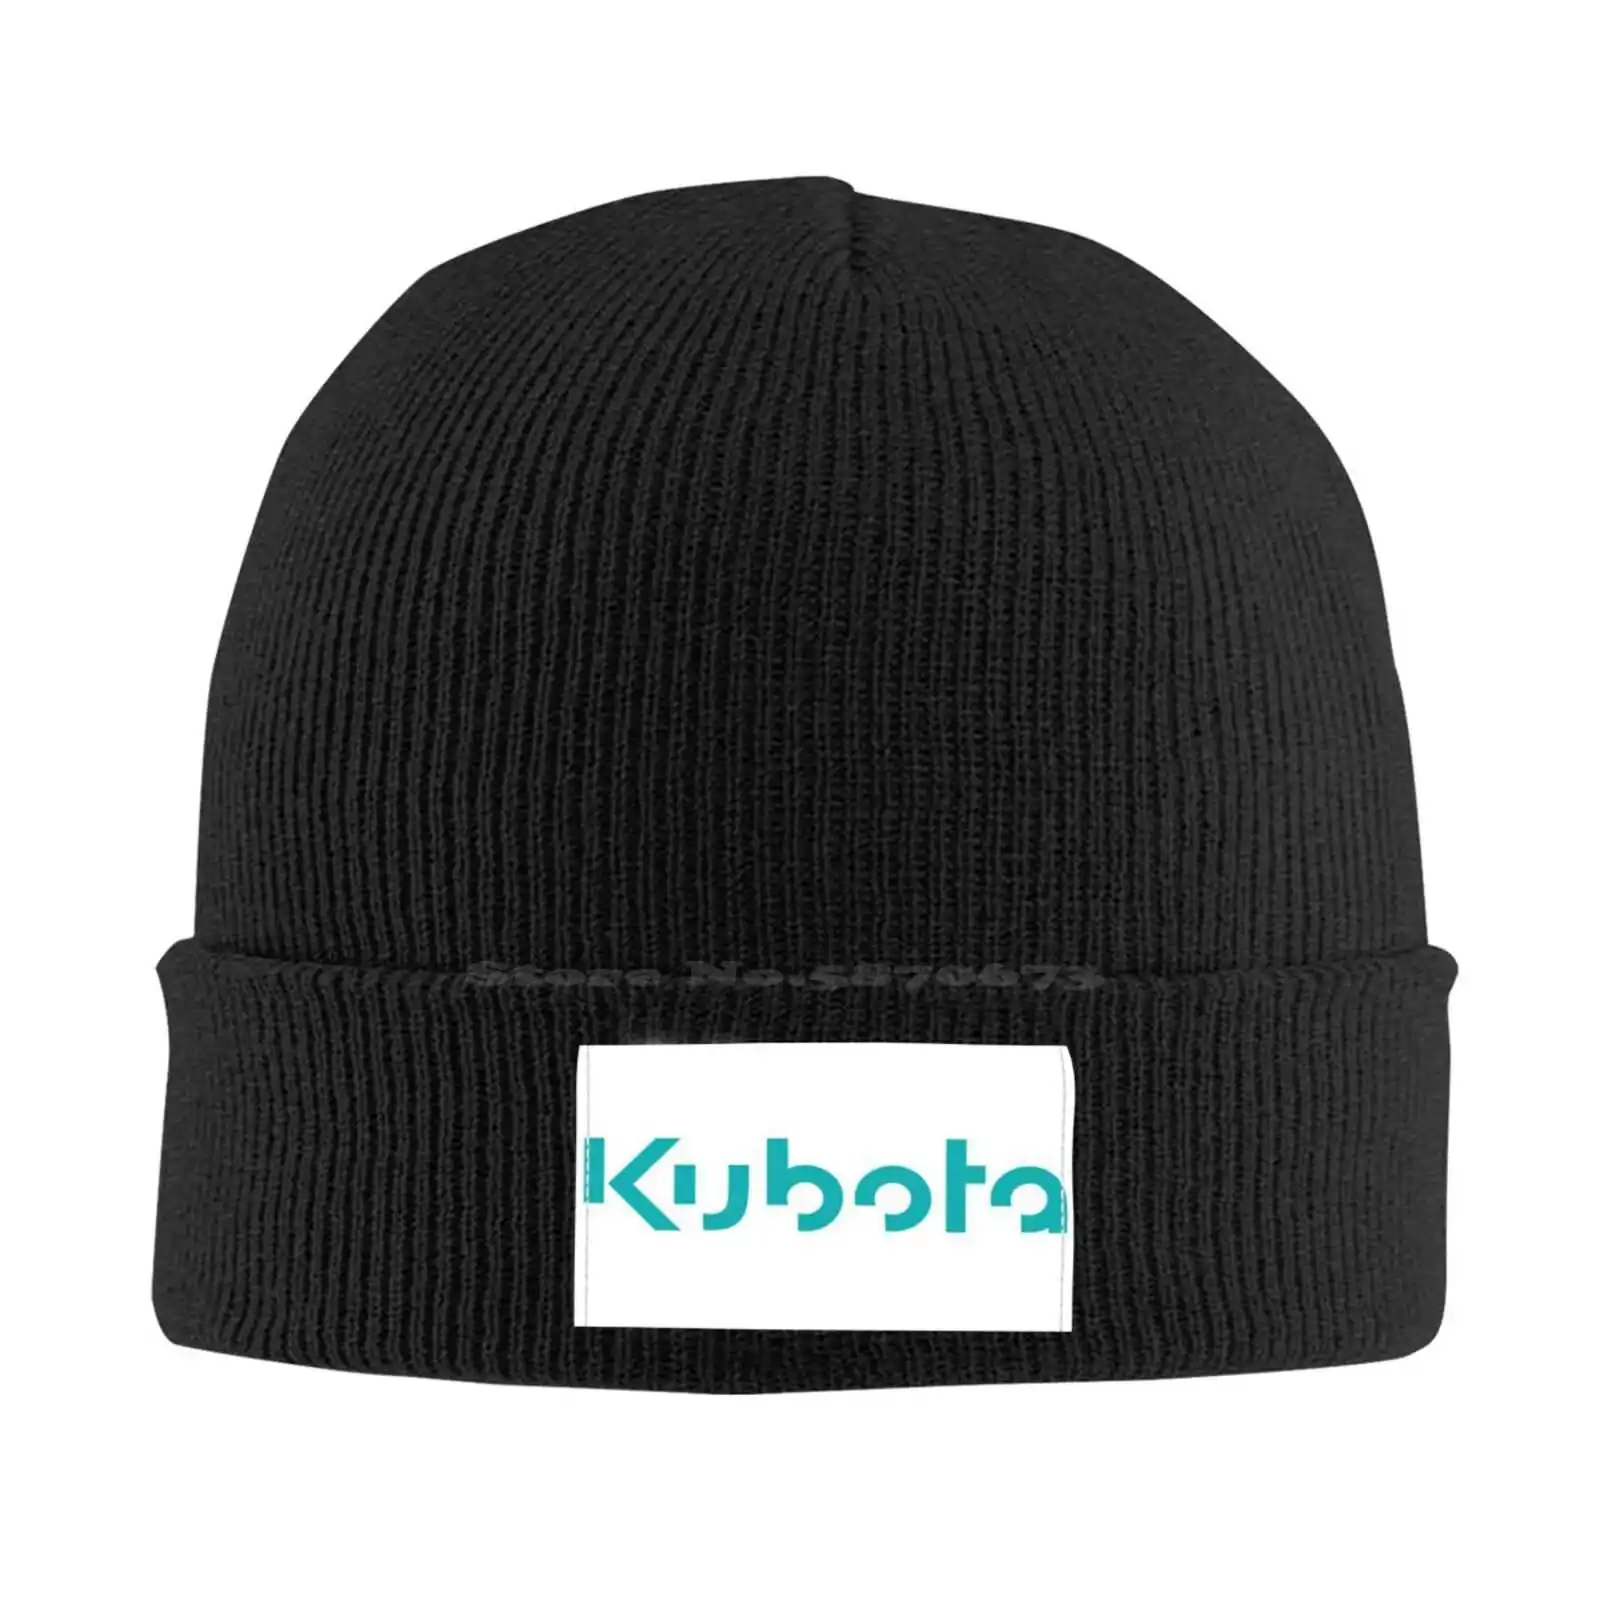 Модная кепка с логотипом Kubota, качественная бейсболка, вязаная шапка